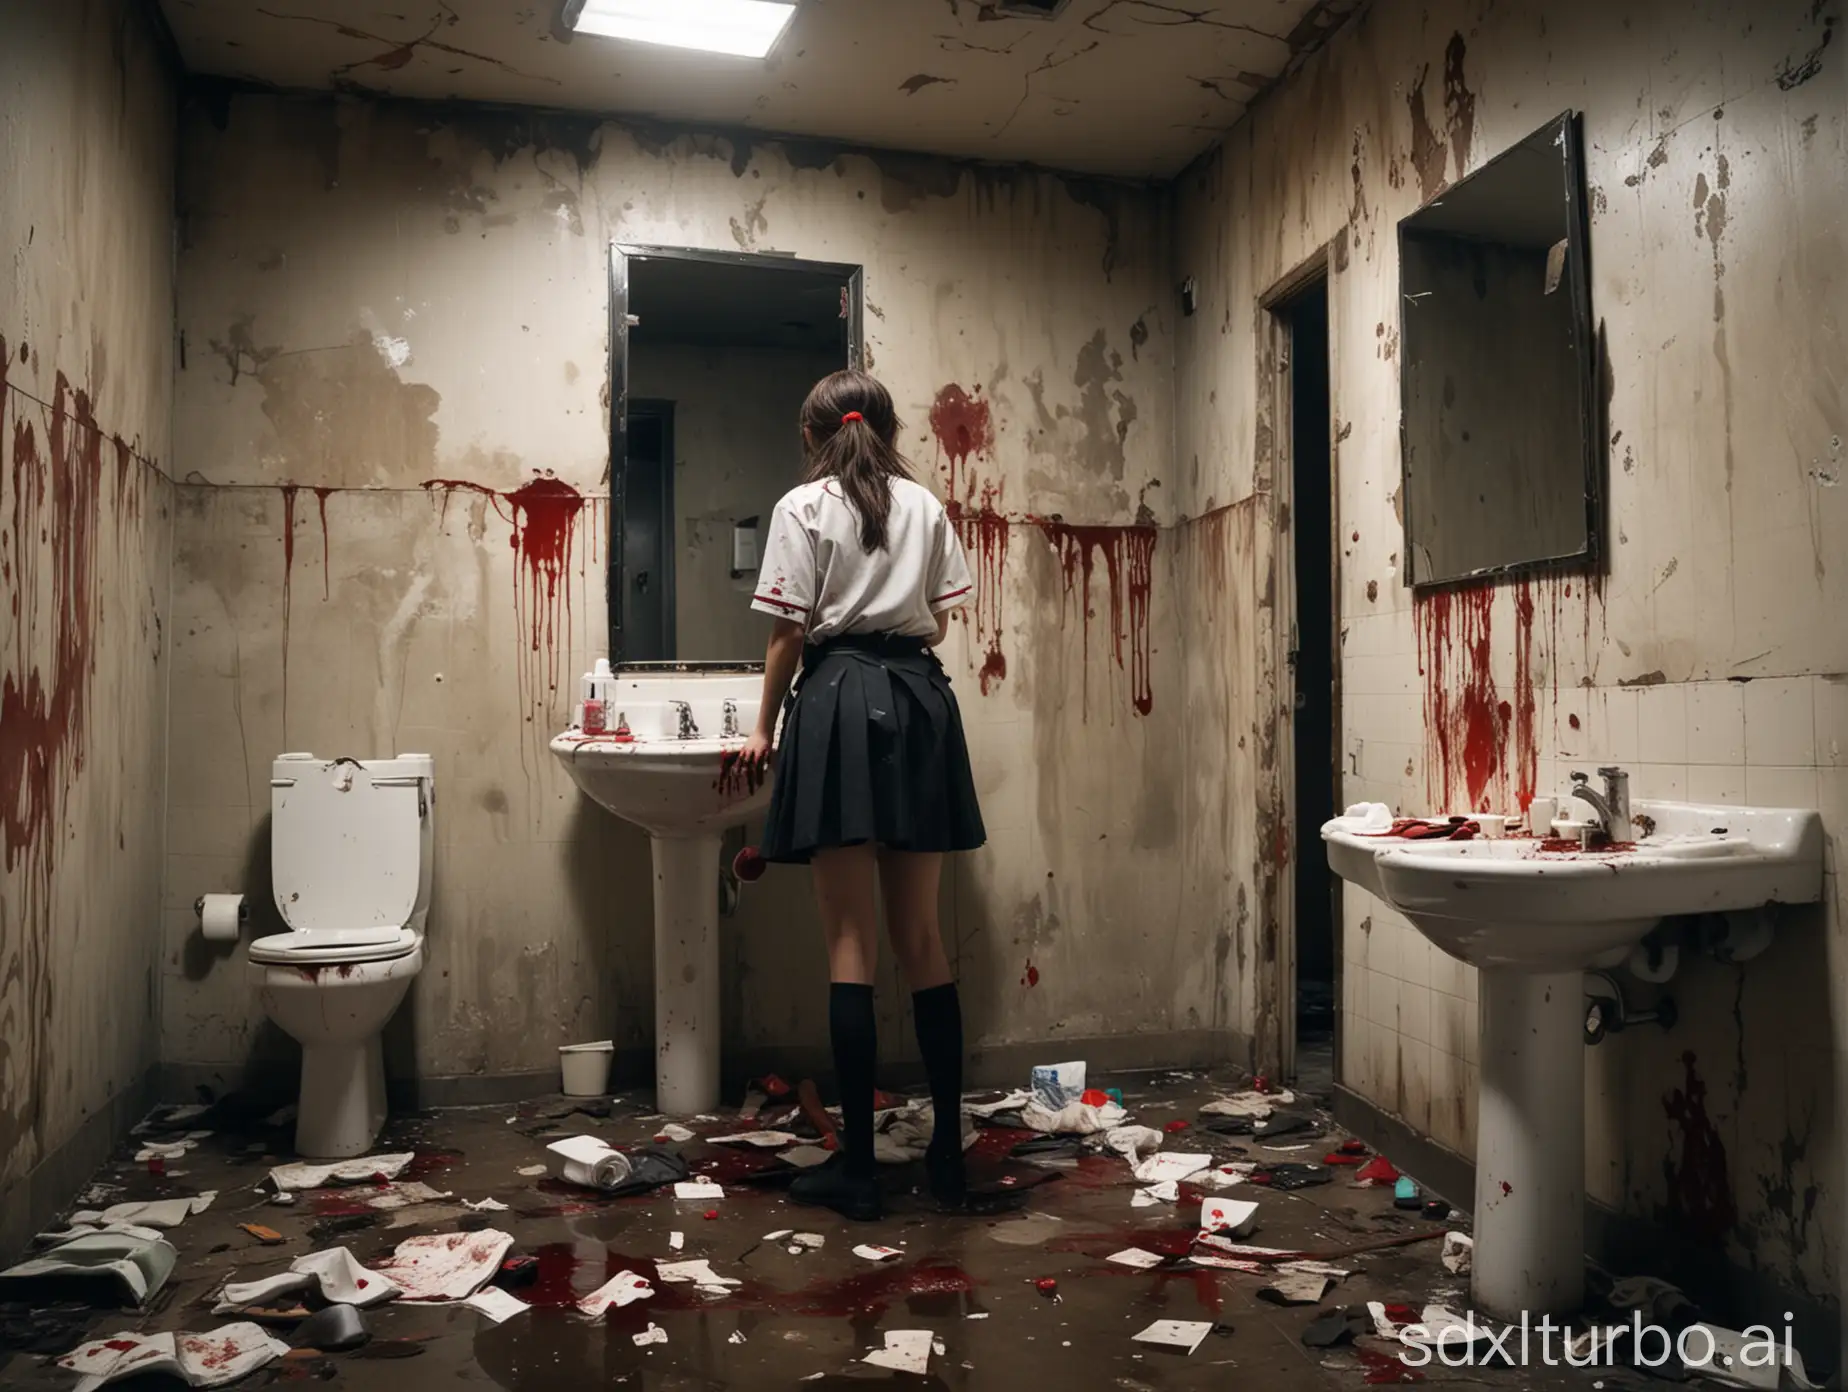 在一个废弃残破脏乱的洗手间里面，厕所里面有血迹，有一面大镜子，有洗漱台，洗漱台旁边有一名女学生，女学生穿着jk校服，画面风格压抑黑暗光线暗淡